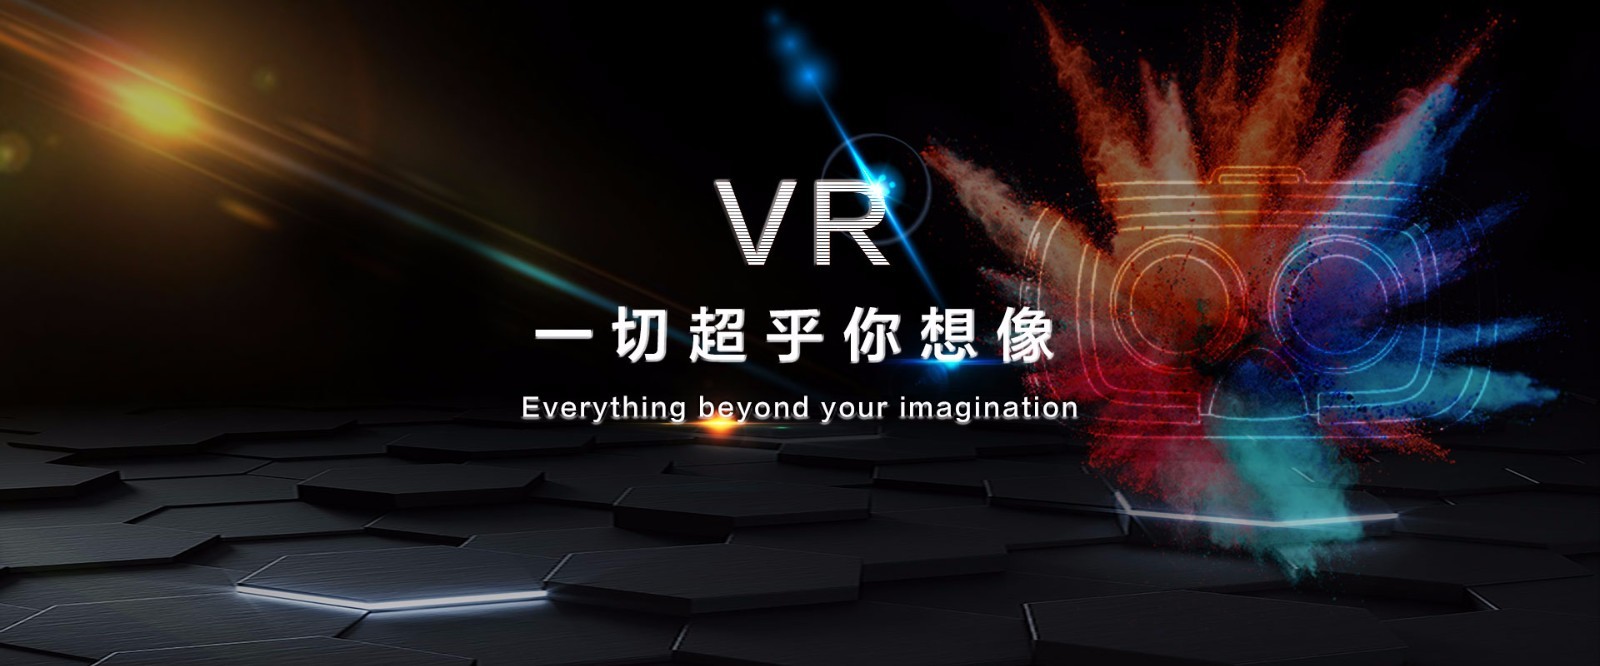 【火星VR】简介、官网,杭州星石网络科技有限公司